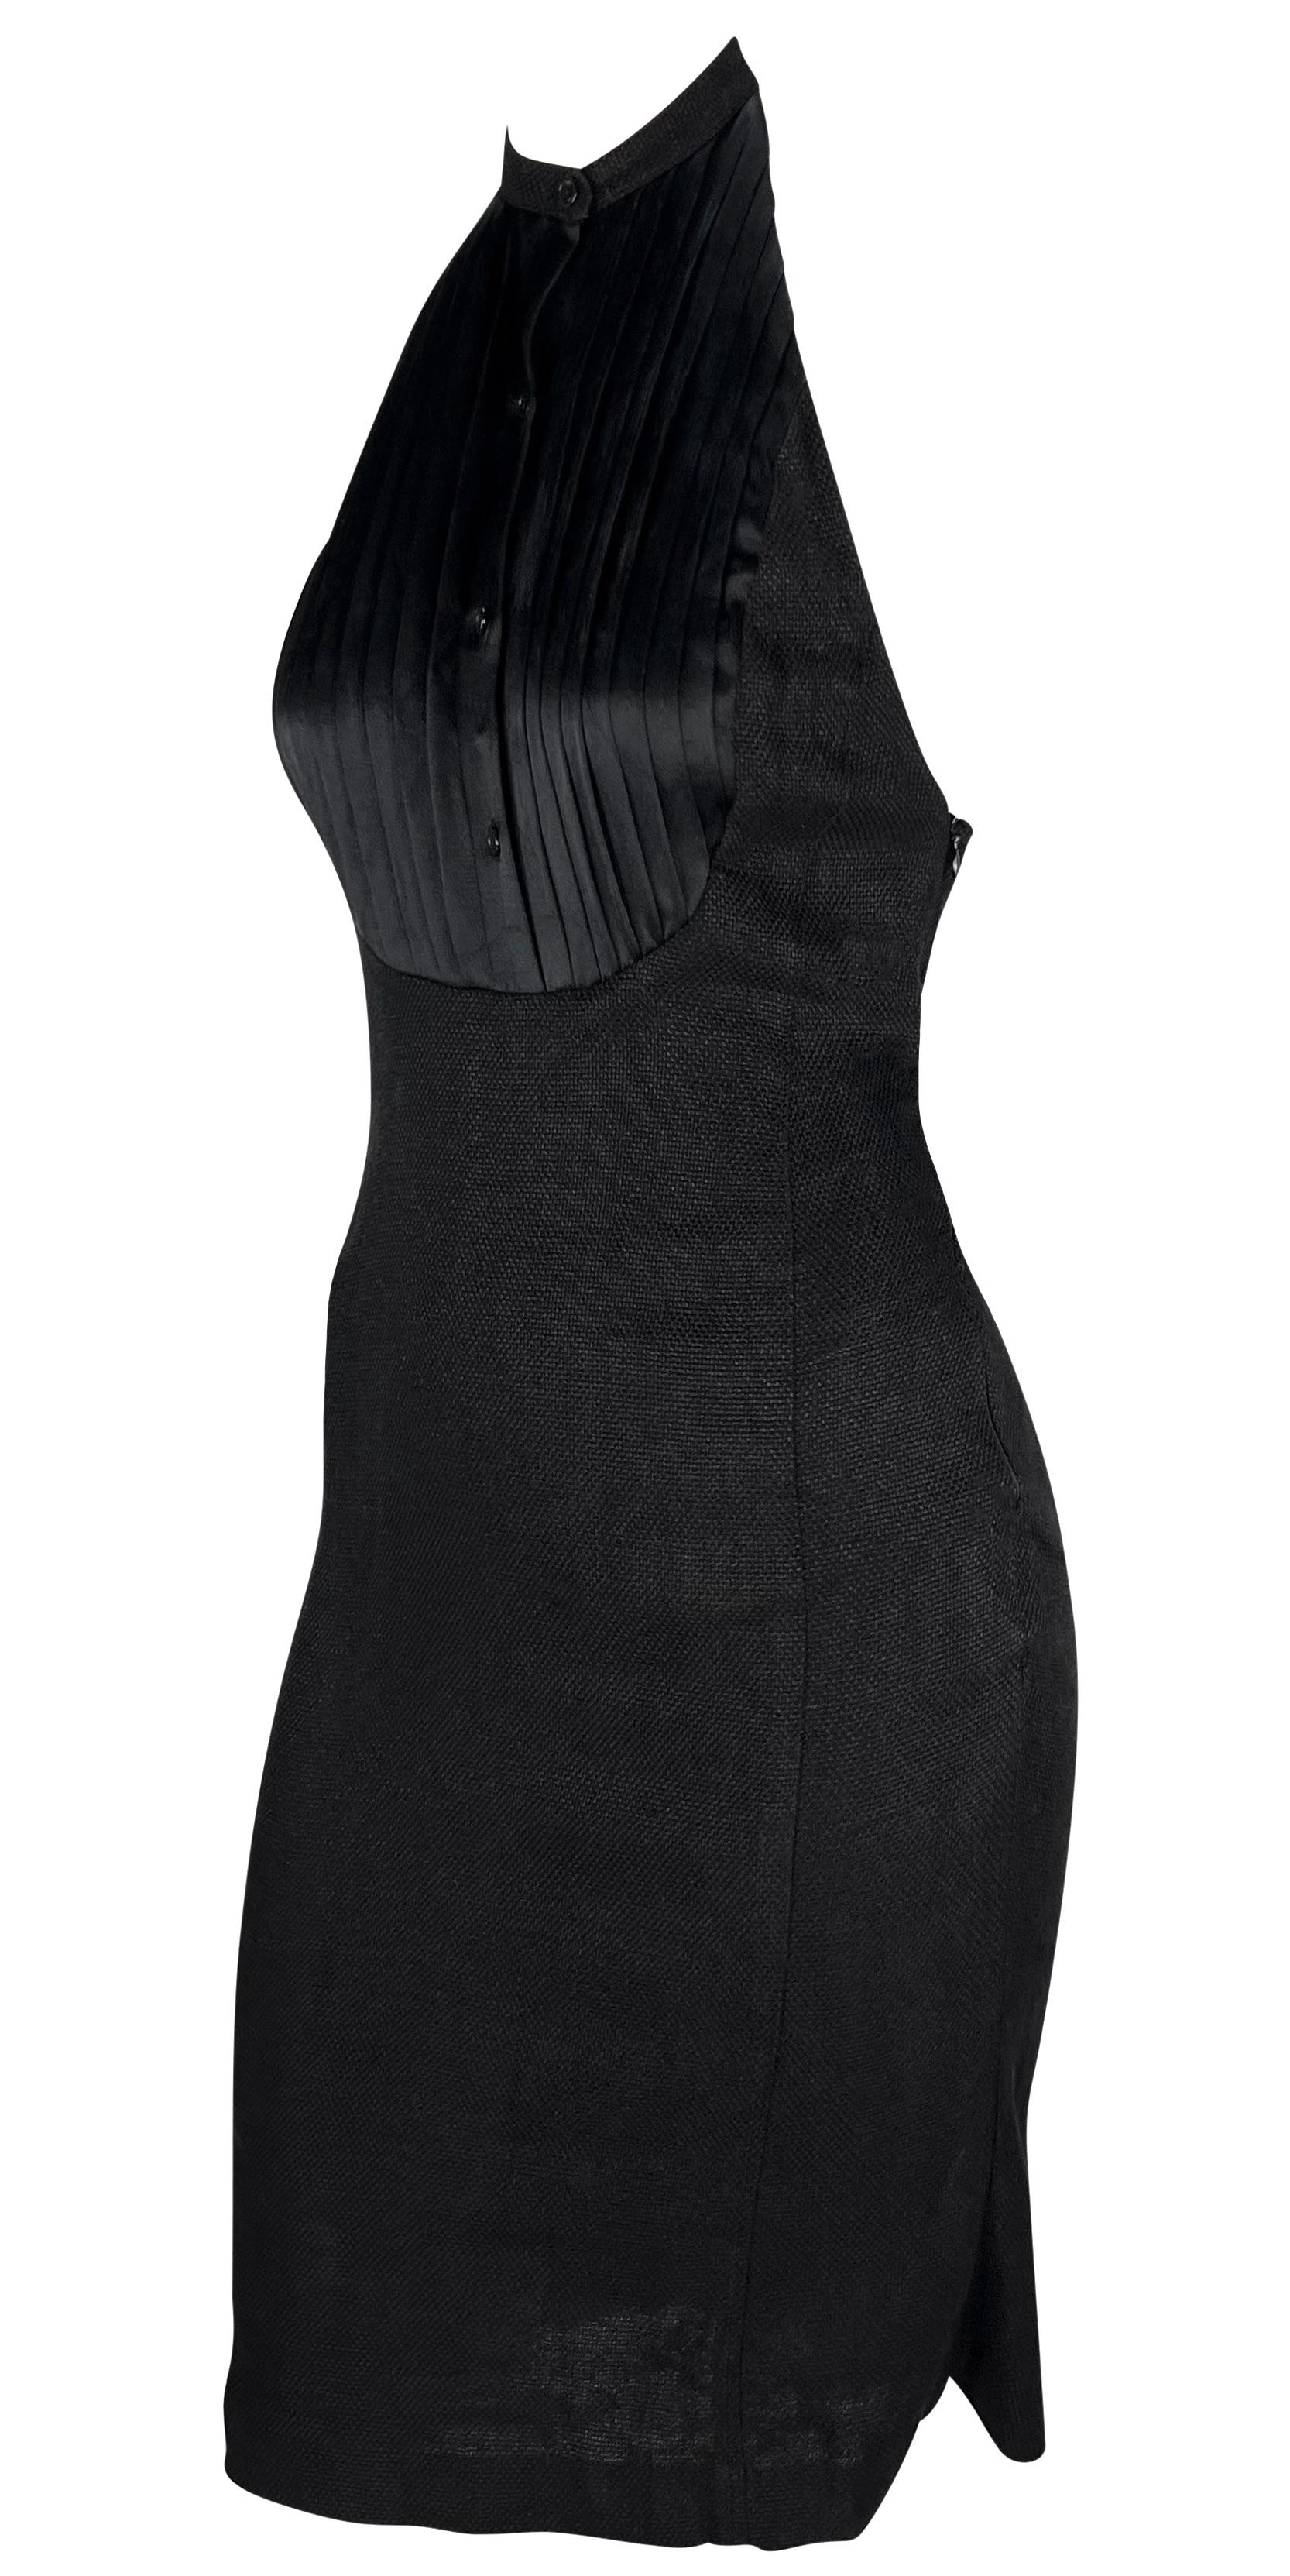 S/S 2007 Ralph Lauren Runway Black Linen Button Up Backless Halter Dress For Sale 2